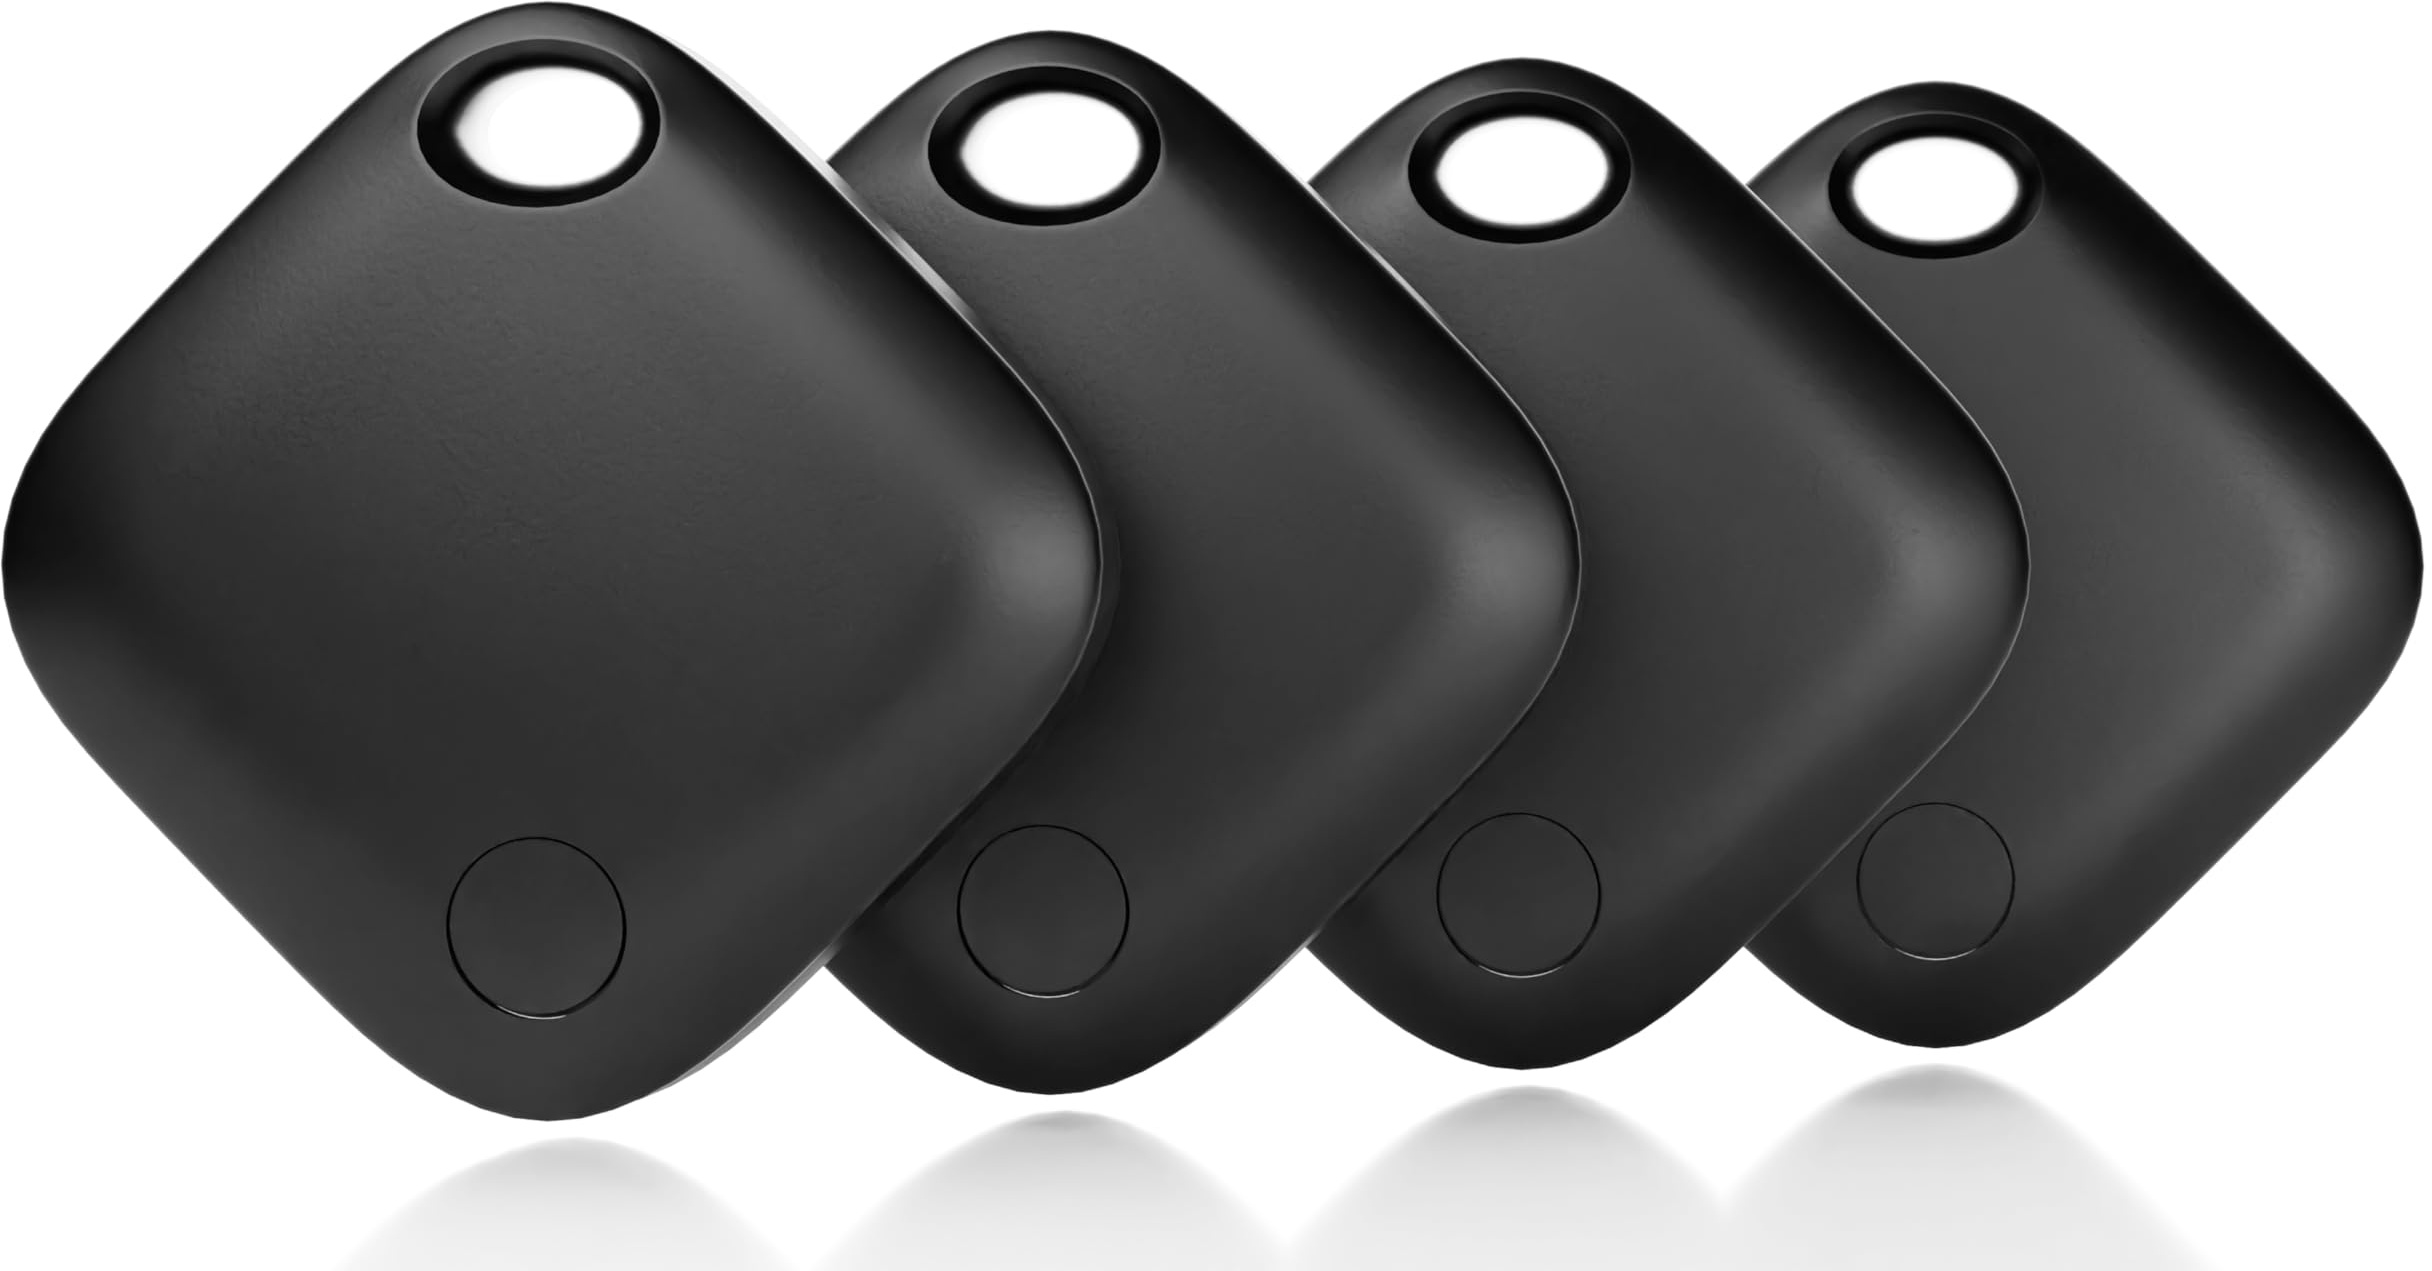 WALLTRUST 4 Stück Schlüsselfinder Tracker Kompatibel mit Apple Wo ist? APP (iOS) iPhone und iPad – Bluetooth Schlüsselfinder Schlüsselanhänger Gadget in Schwarz für Taschen Tiere Schlüssel